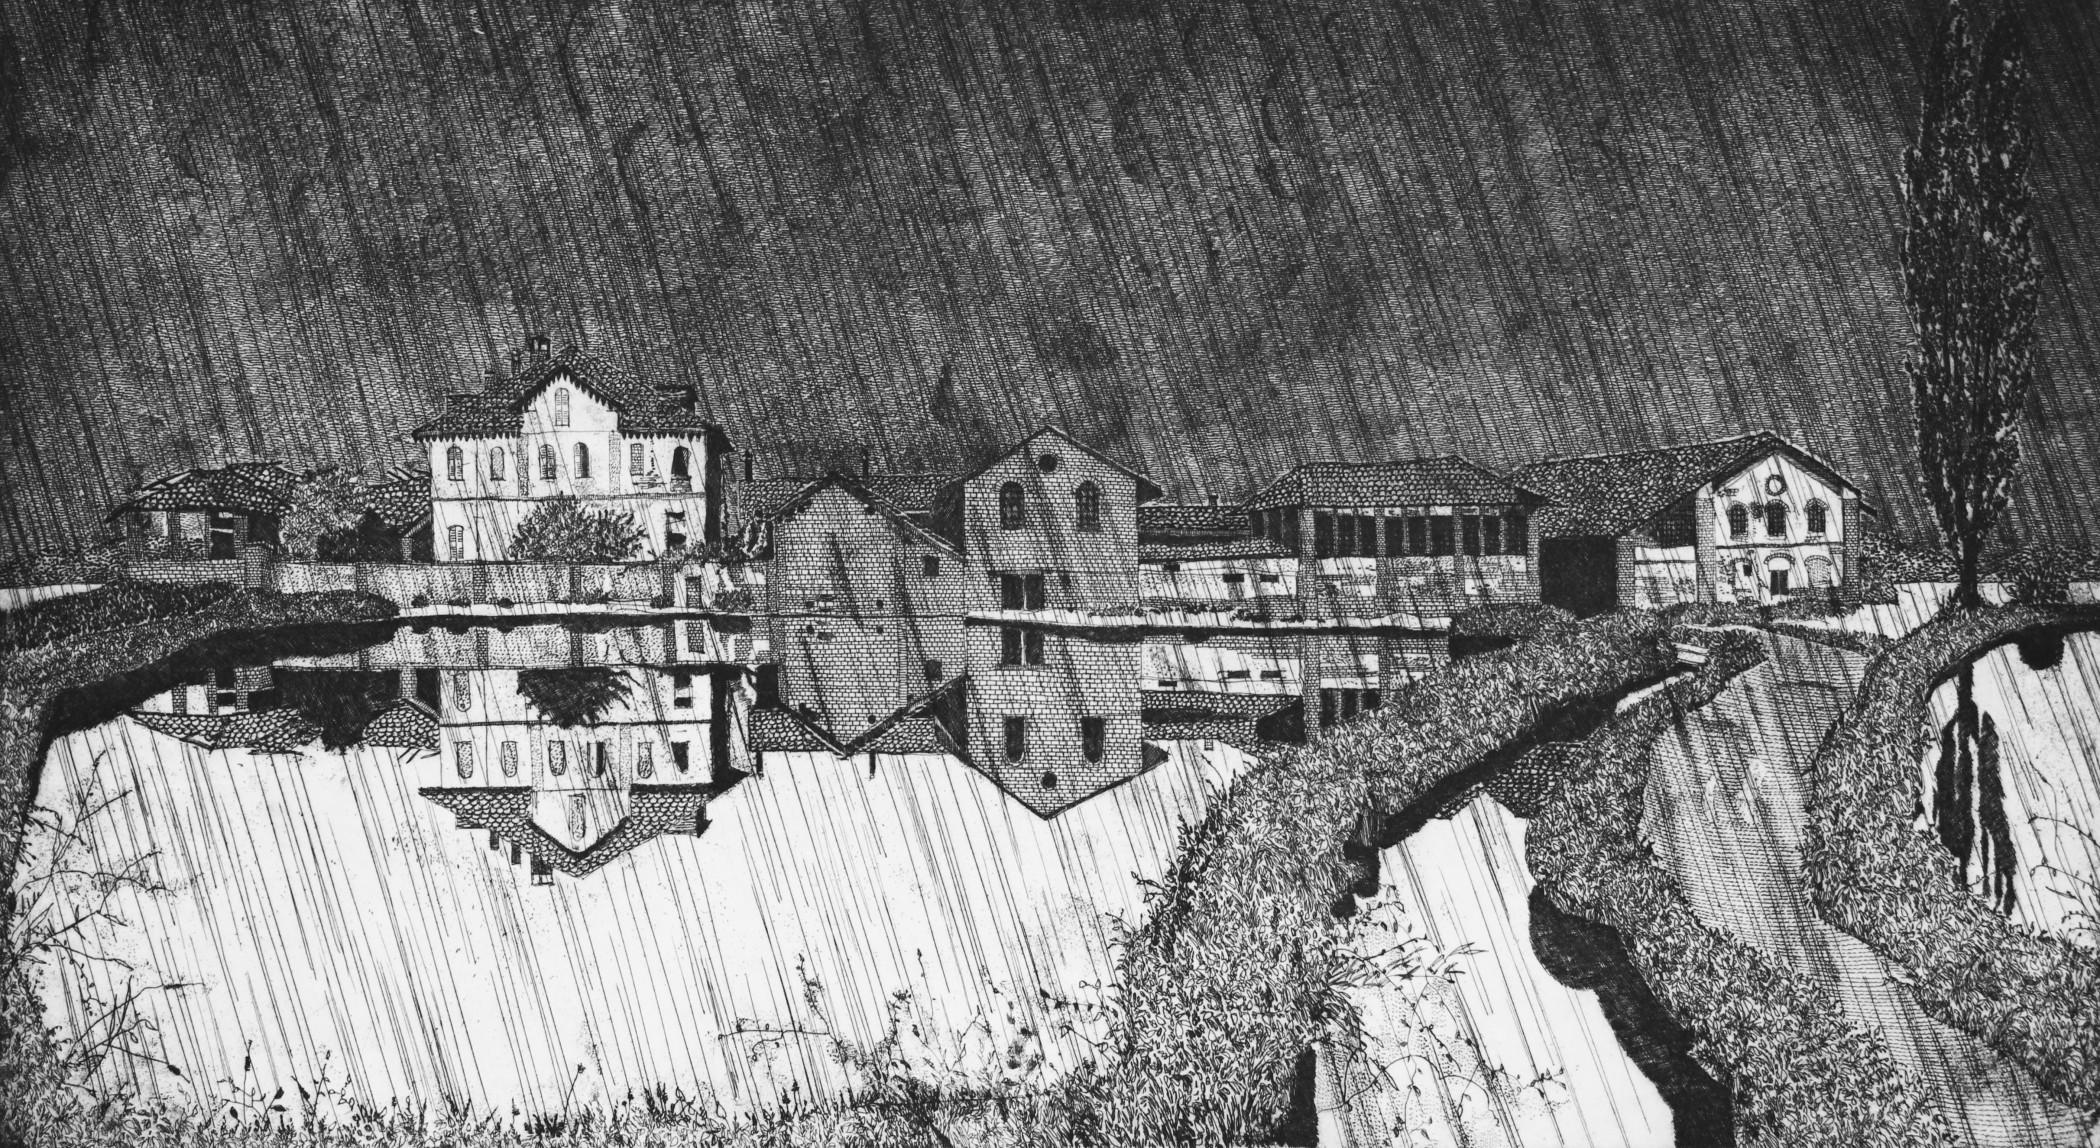 Cascina San Pietro, 1982, rif. 435

Gravure à l'eau-forte en pouces 13,5 x 25,1 (mm 347 x 637). Art contemporain

Etcheur. Figure marquante de l'art de la gravure en Italie, Federica Galli est née en 1932 à Soresina, un village situé à proximité de